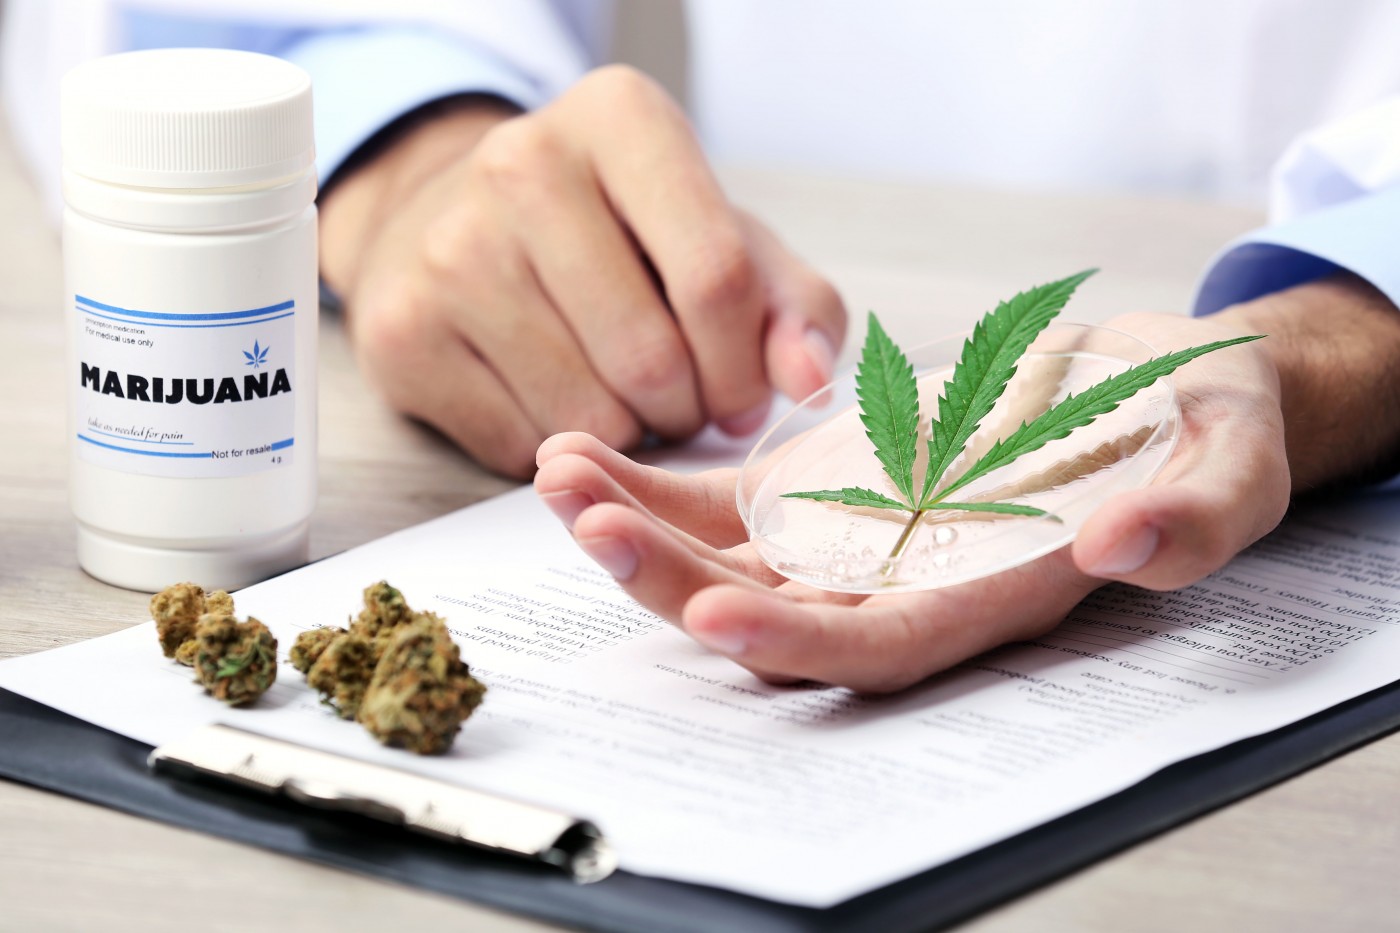 medical cannabis